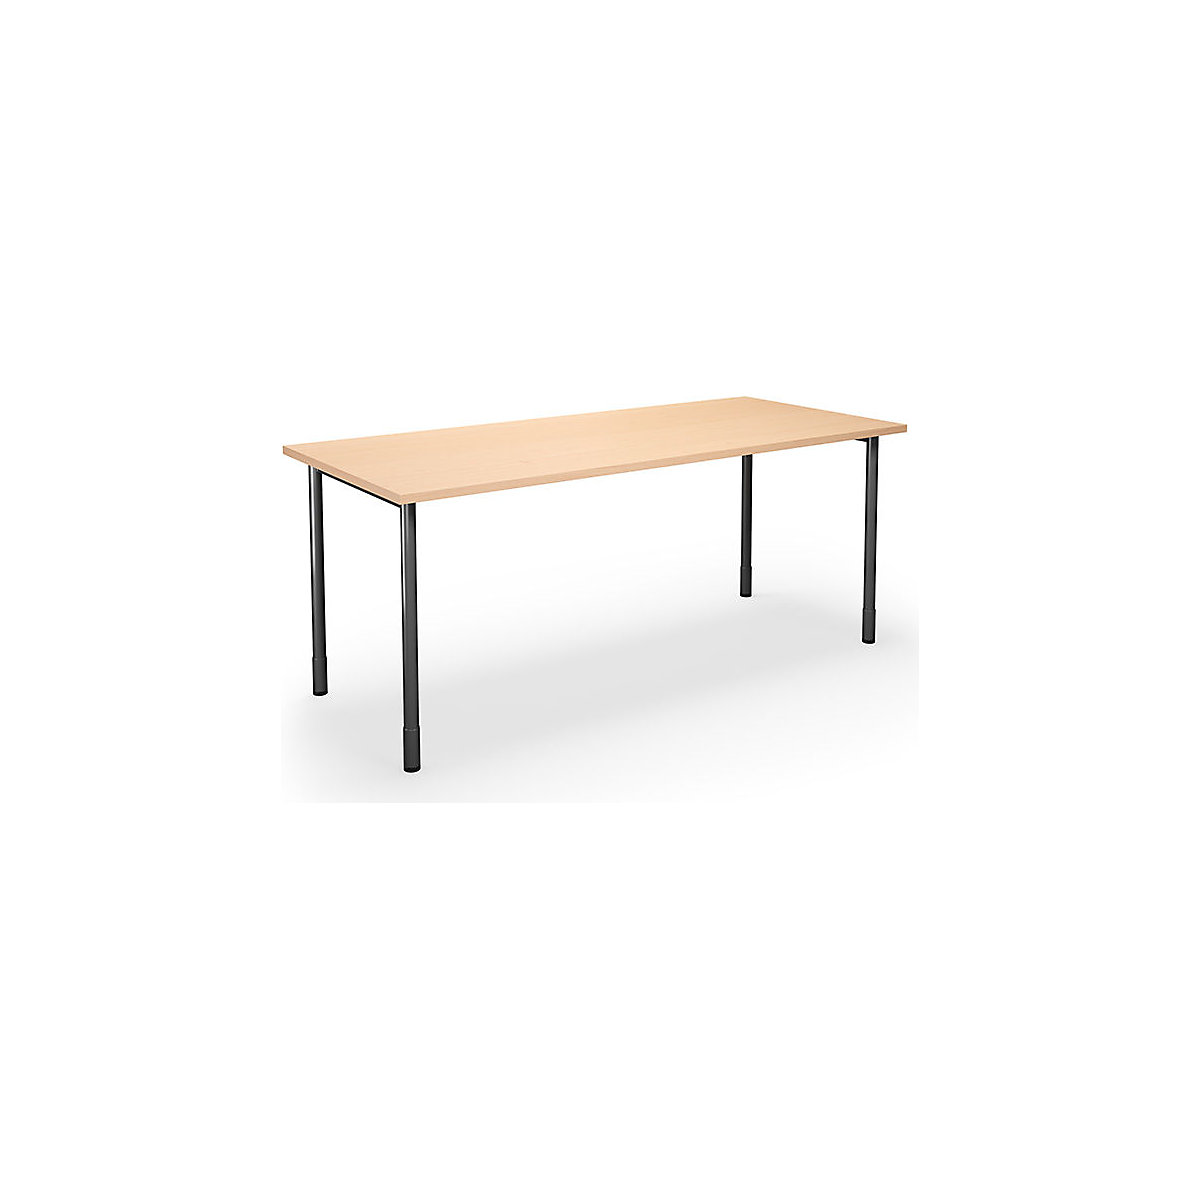 DUO-C multi-purpose desk, straight tabletop, WxD 1800 x 800 mm, birch, black-16